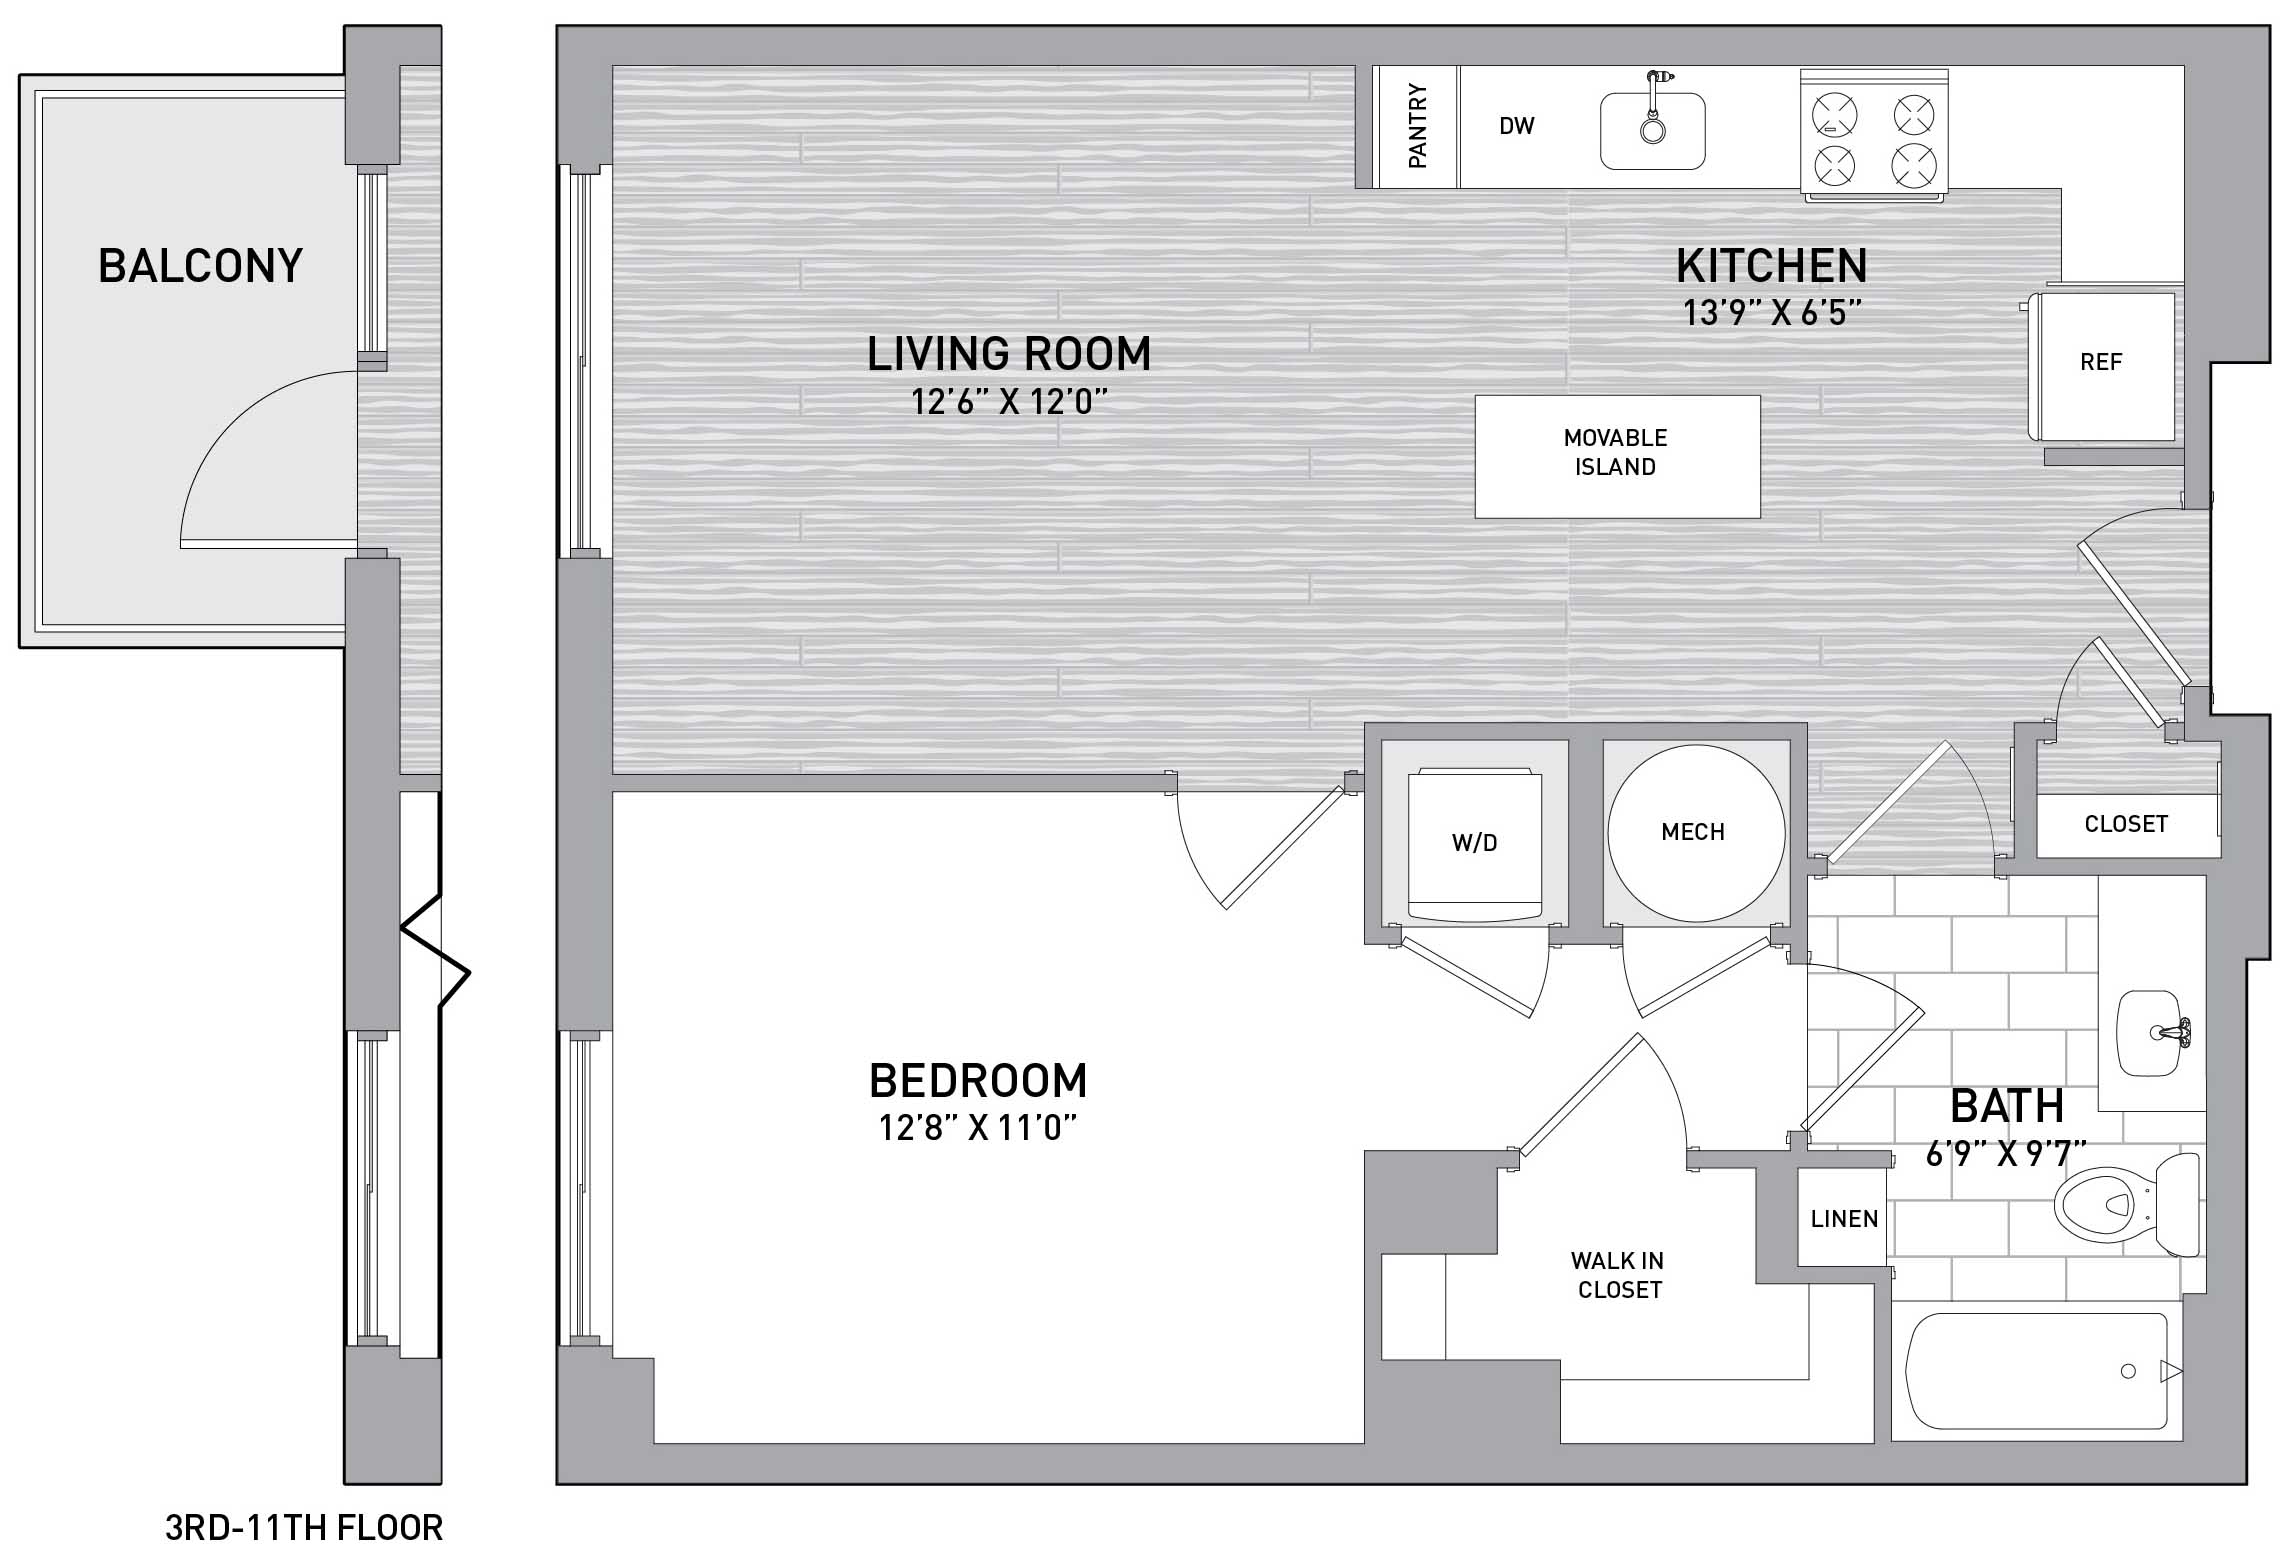 Floorplan Image of unit 151-1005